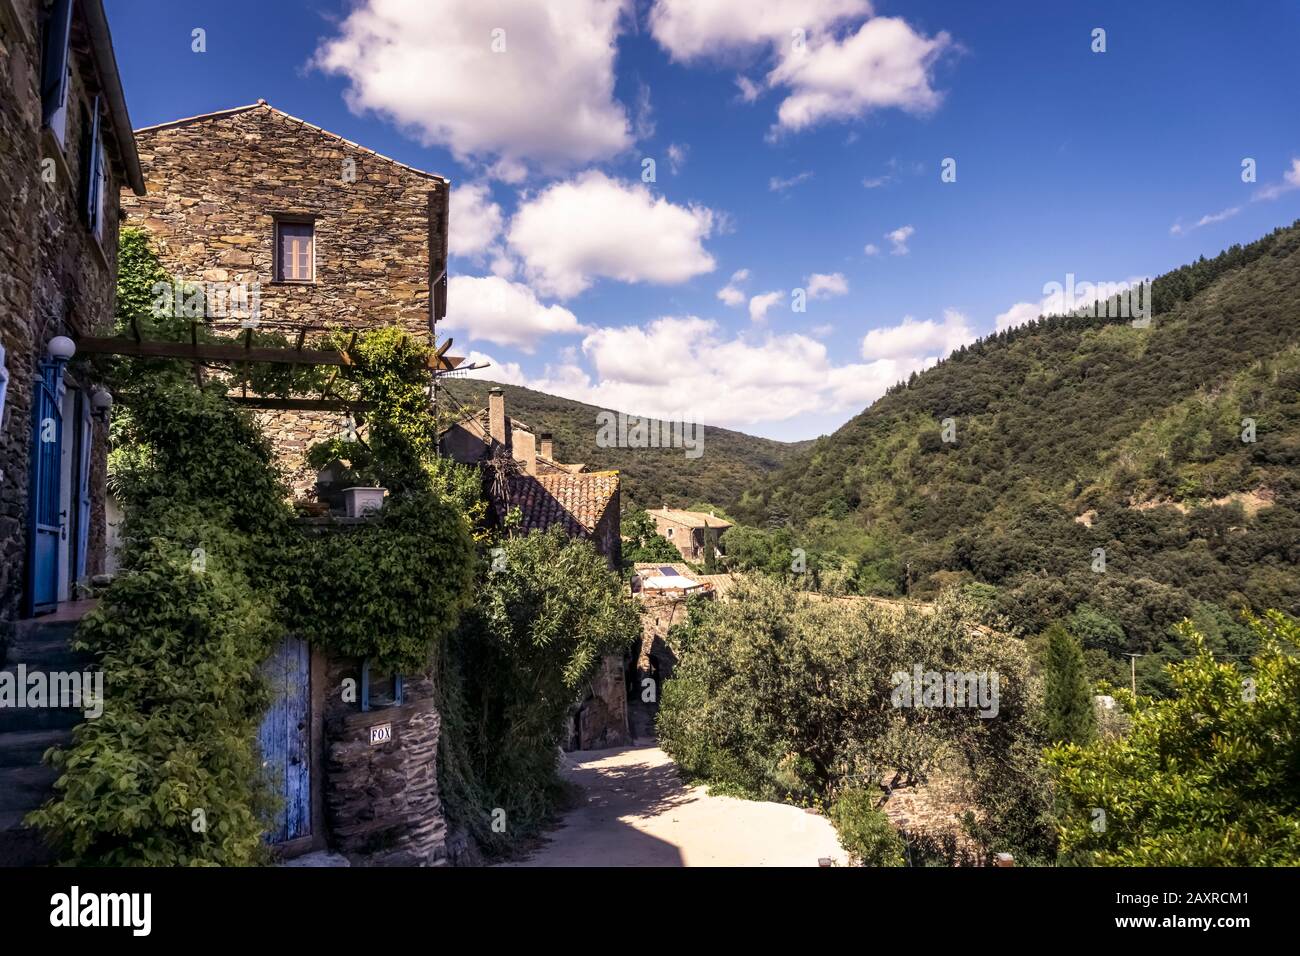 Dorf in der Nähe von Roquebrun. Der Weiler liegt direkt auf dem schwarzen Schiefer des Berges. Die Häuser bestehen aus demselben Material. Befindet sich in der reg Stockfoto